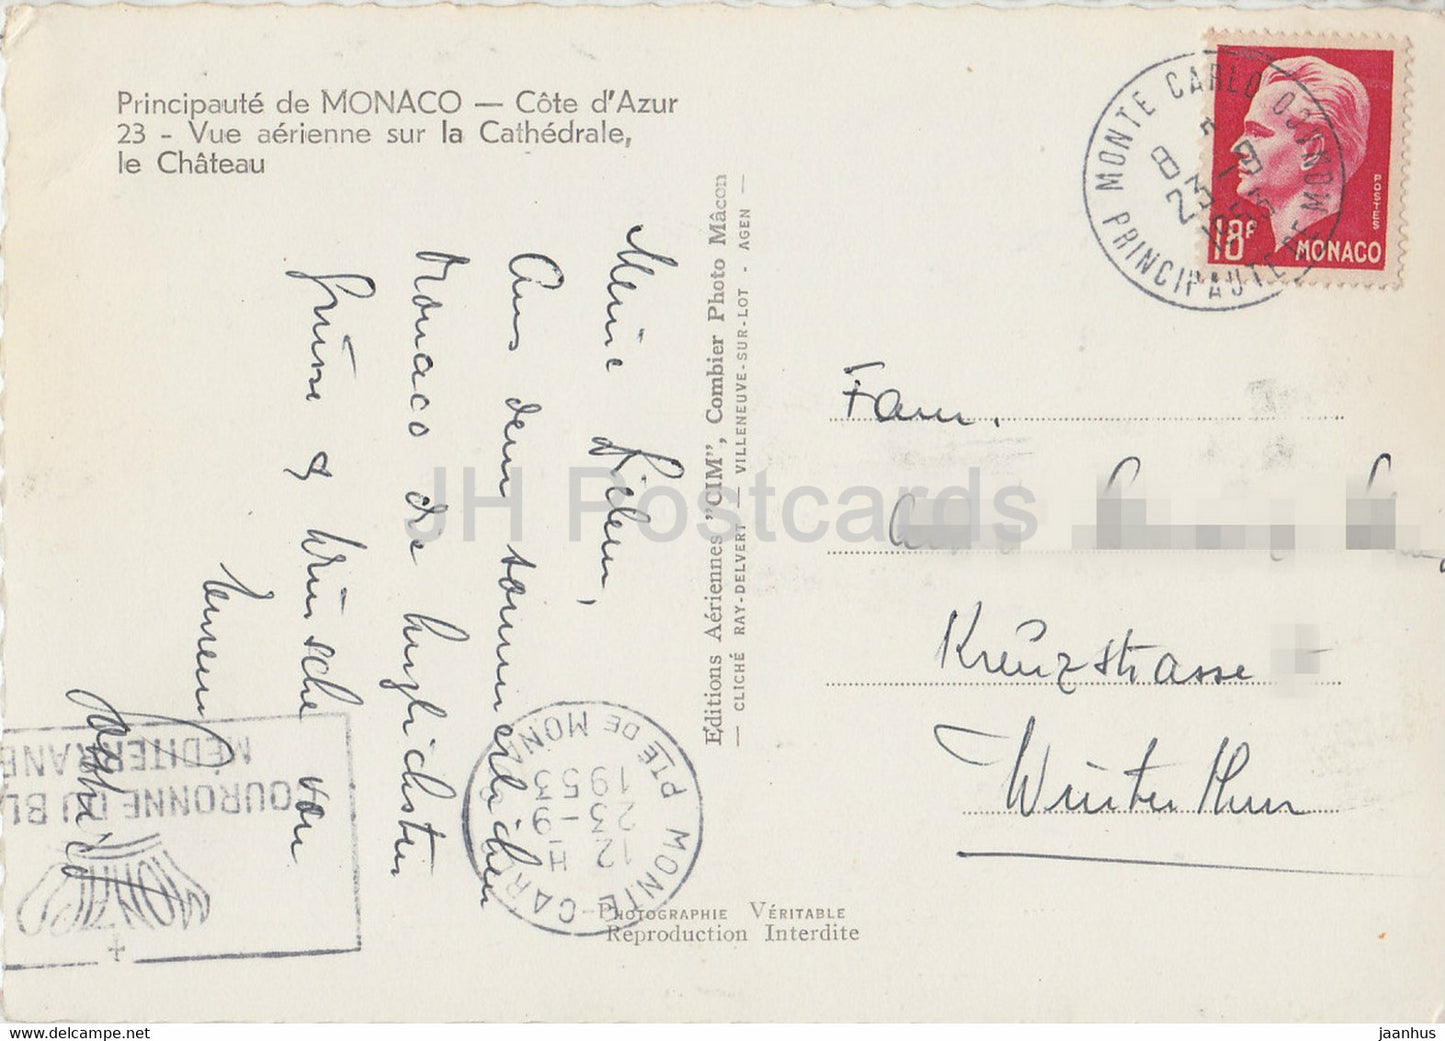 Vue aérienne sur la Cathédrale - Le Chateau - cathédrale - château - carte postale ancienne - 1953 - Monaco - occasion